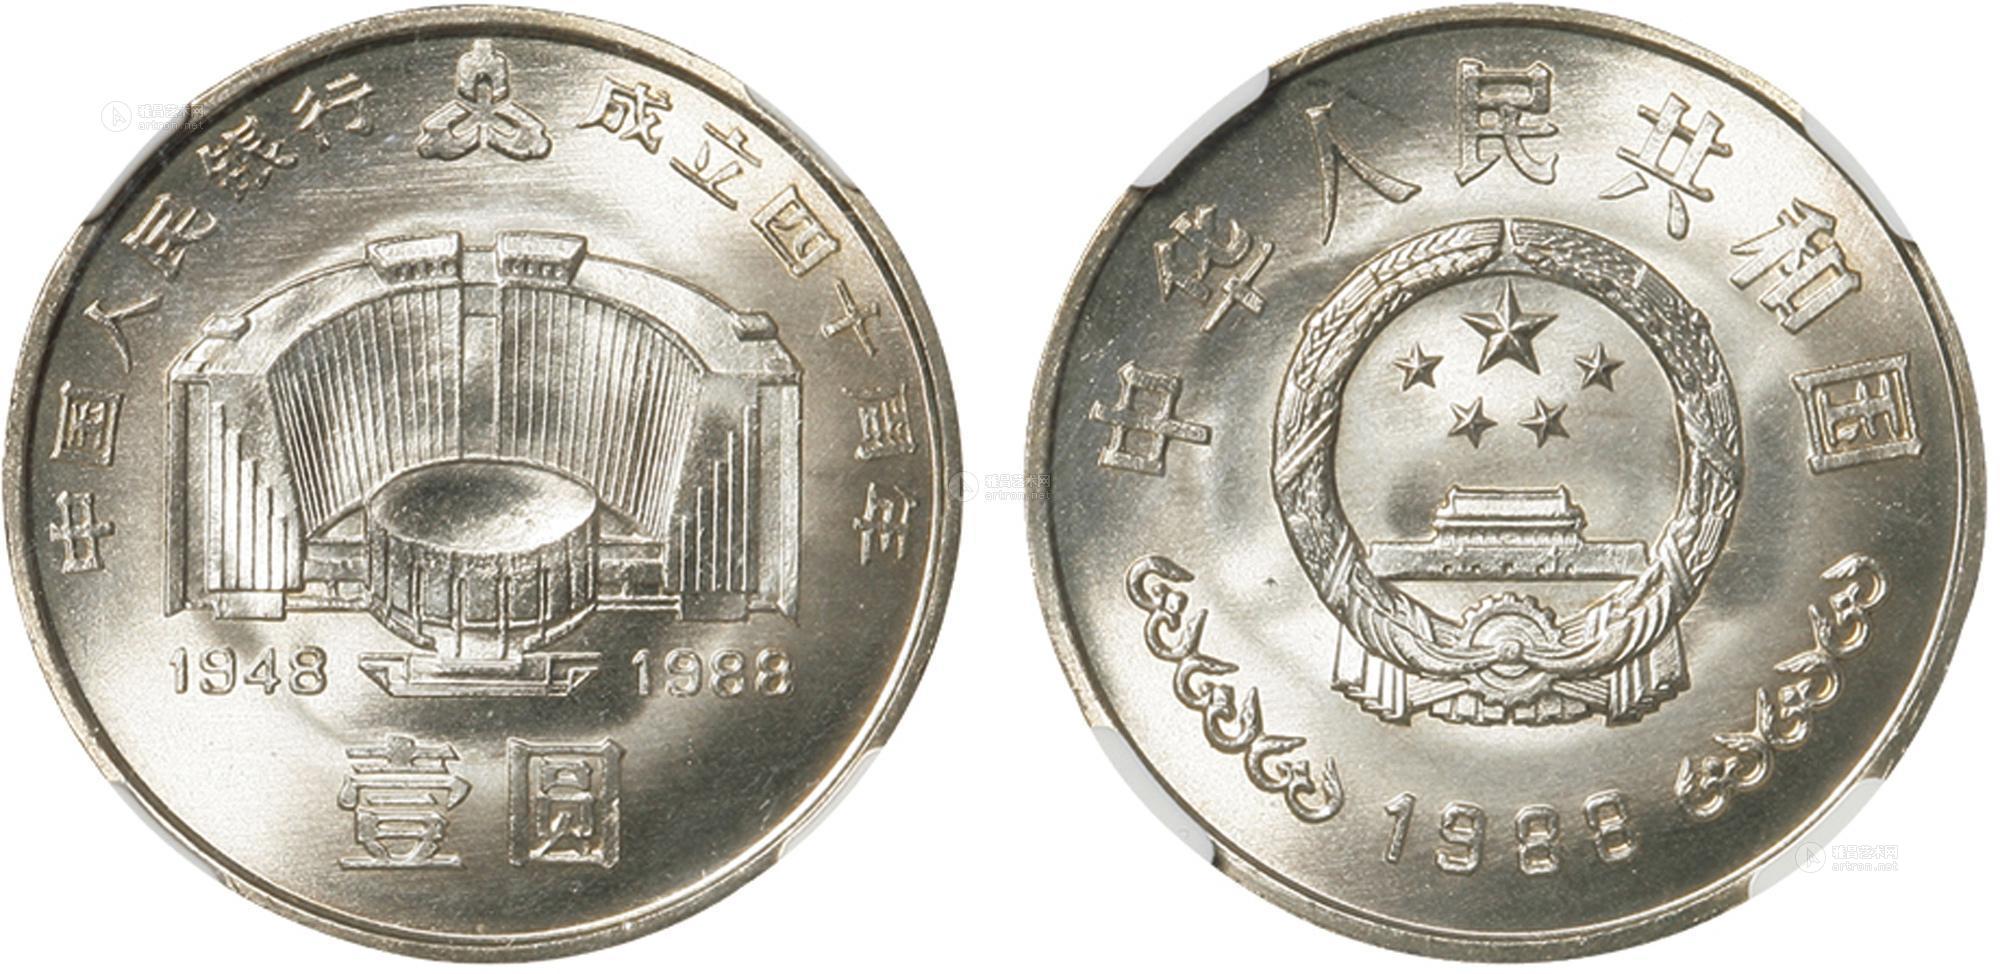 40周年纪念币(中国人民银行建行40周年纪念币)